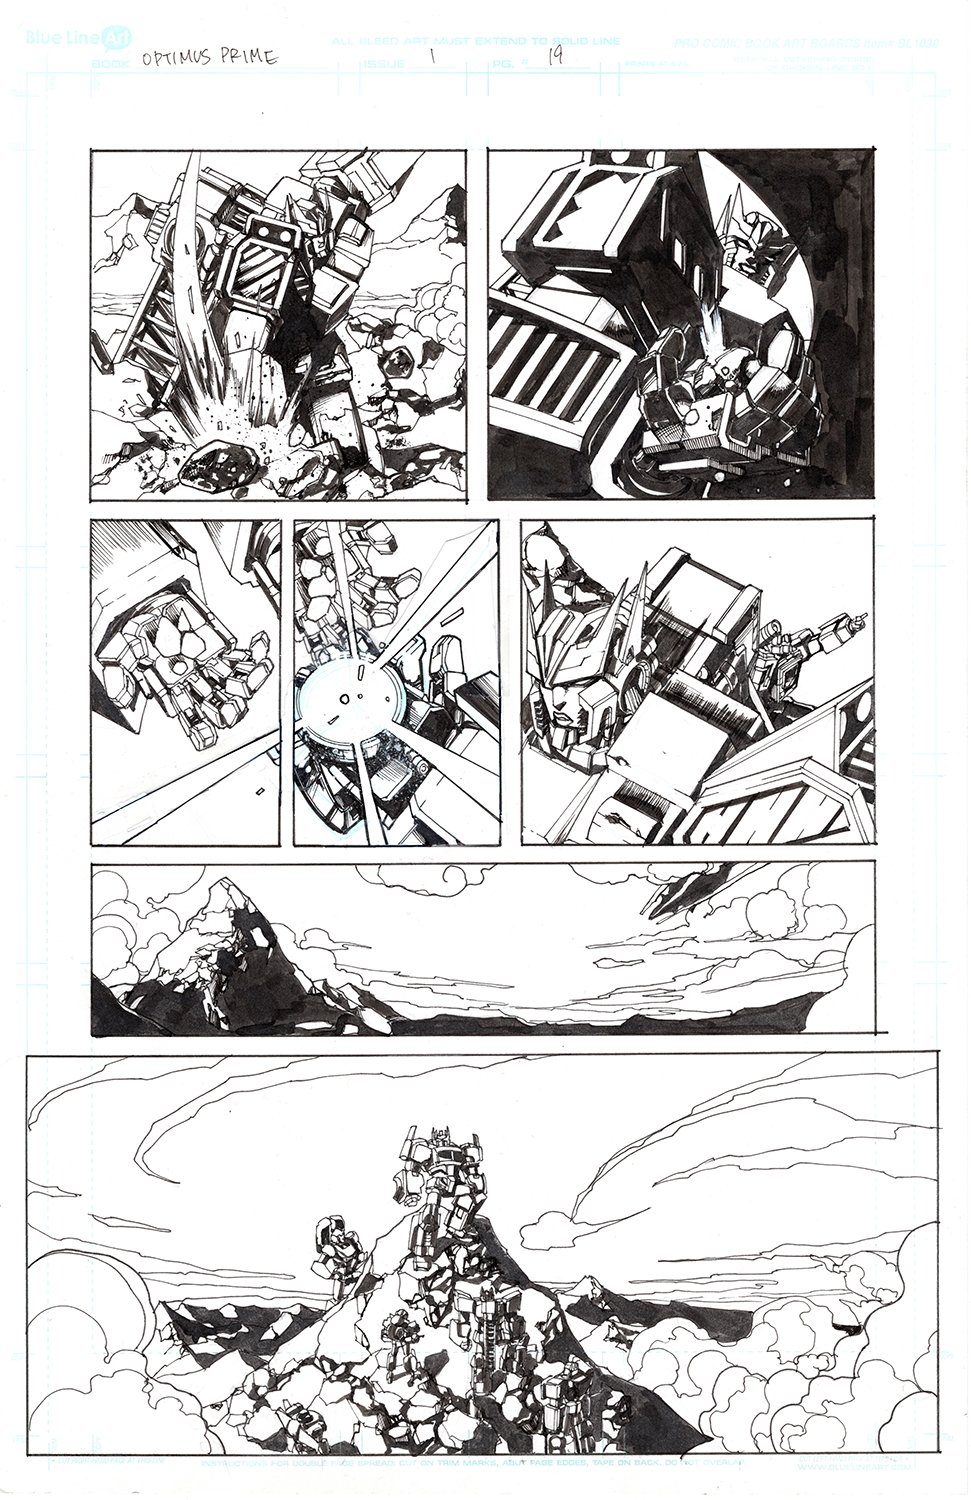 Optimus Prime #1 Page 19